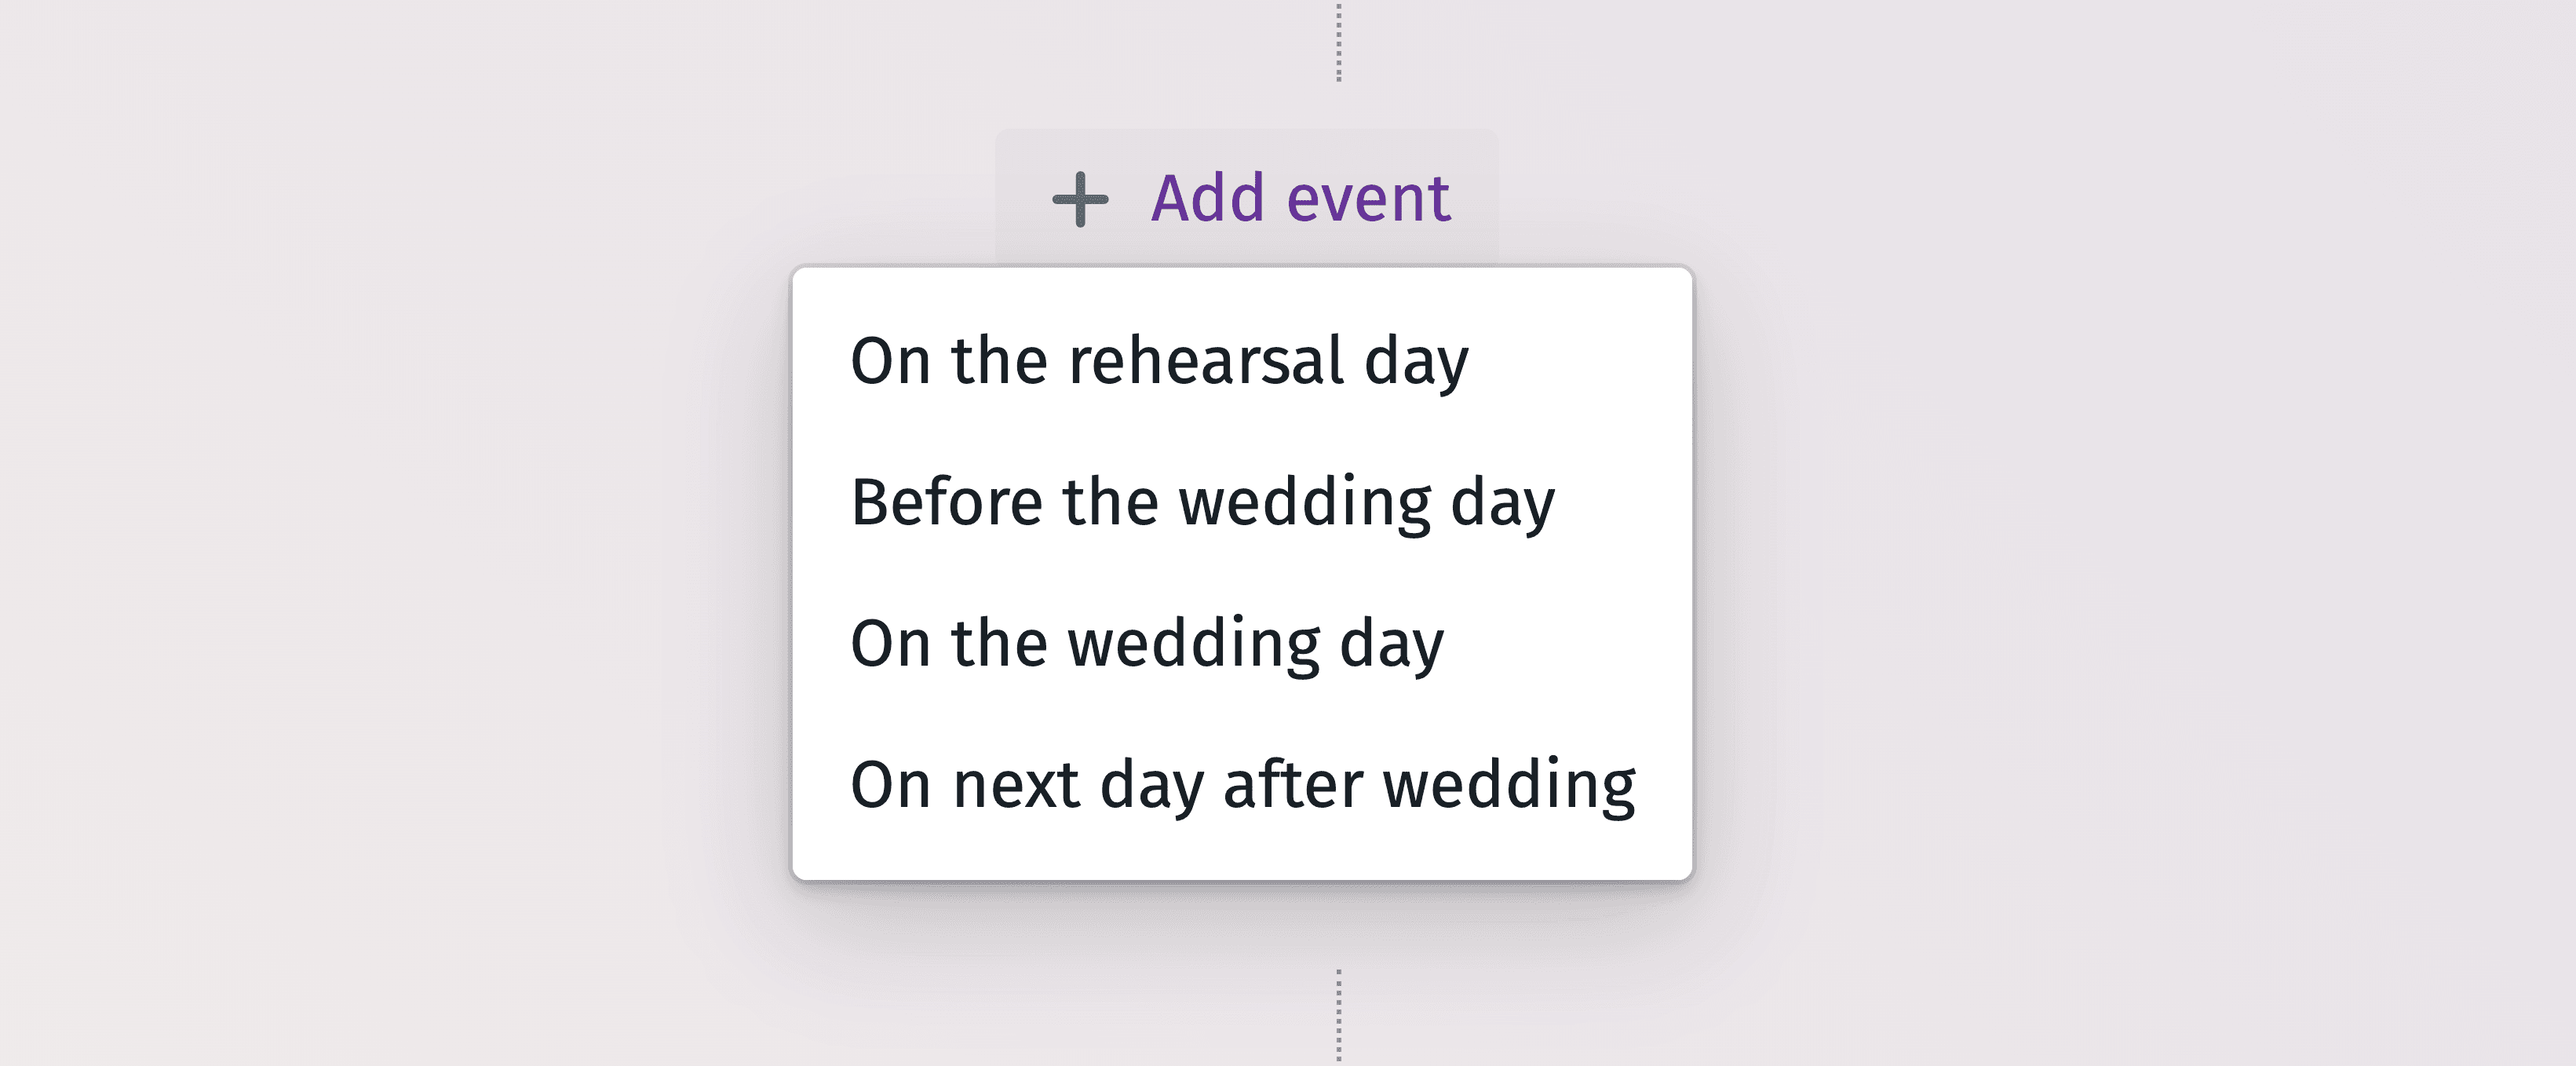 Gráfico cronológico detallado para planificar eficazmente cada momento del día de su boda